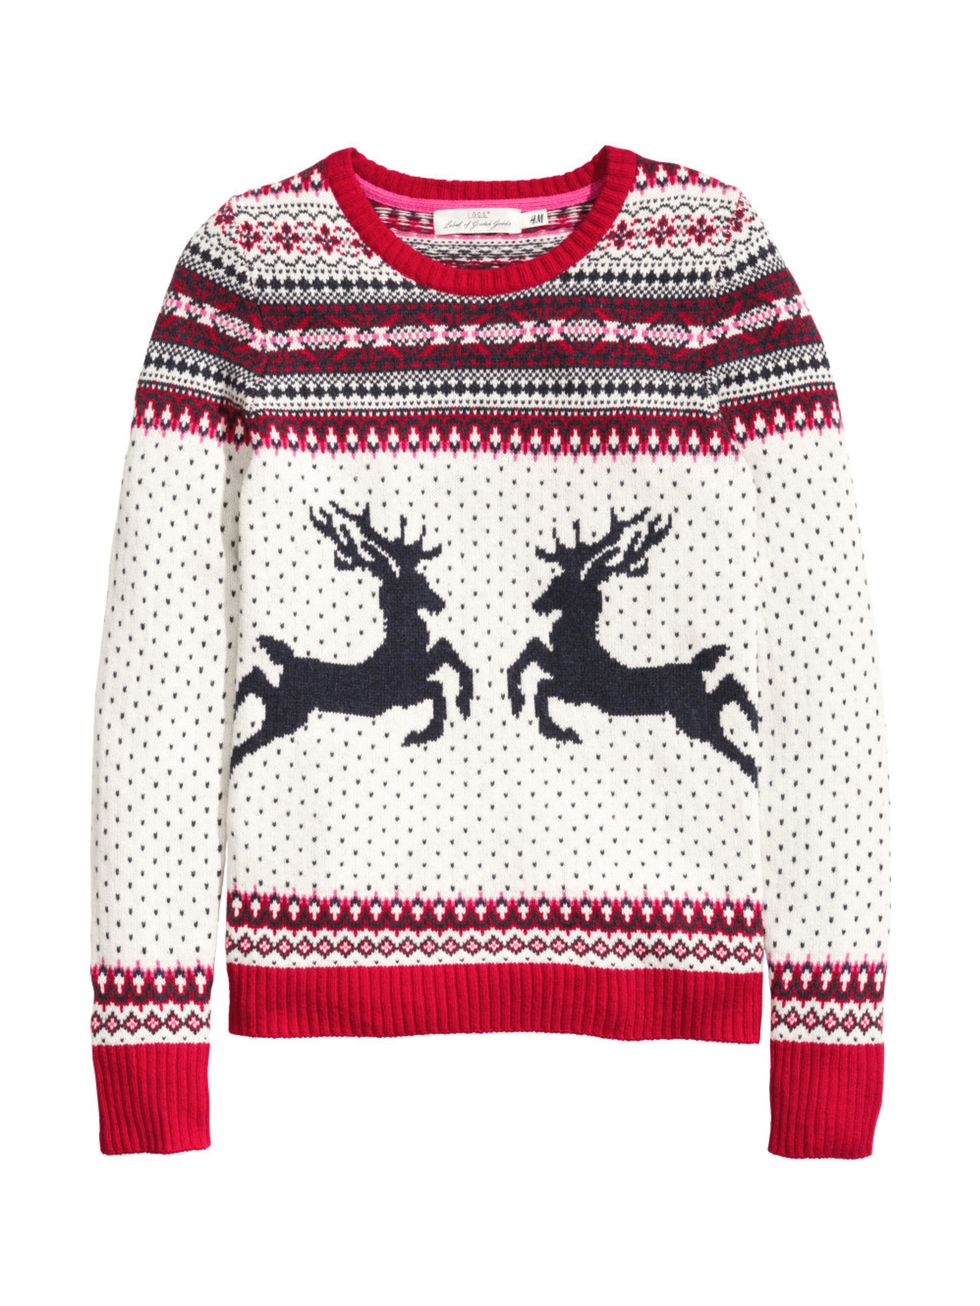 Deer, Sleeve, Pattern, Textile, Red, Carmine, Maroon, Reindeer, Sweater, Creative arts, 